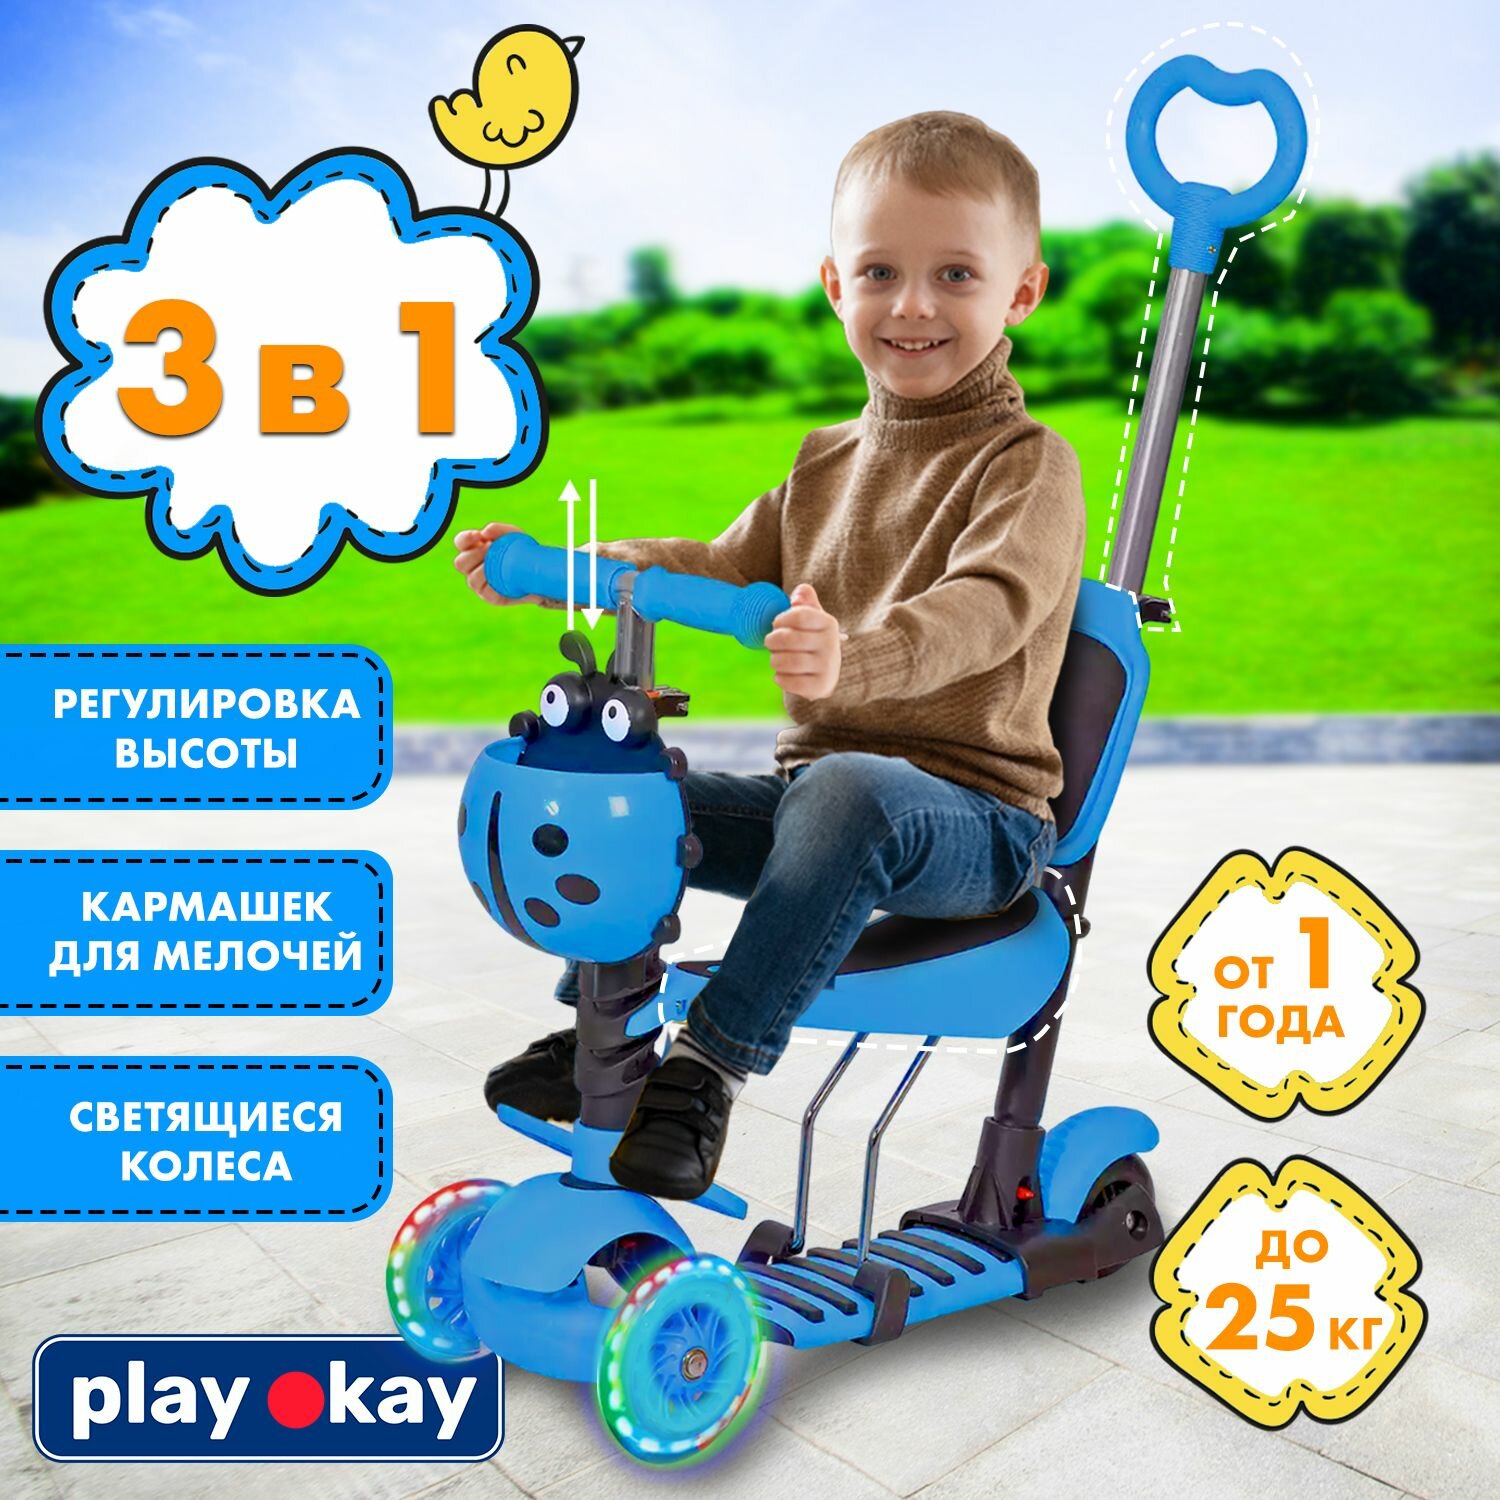 Самокат трехколесный детский с сиденьем и ручкой Play Okay H23060701 трансформер 3 в 1, для мальчика и девочки, регулировка высоты ручки, светящиеся колеса, корзина для мелочей ребенка, голубой